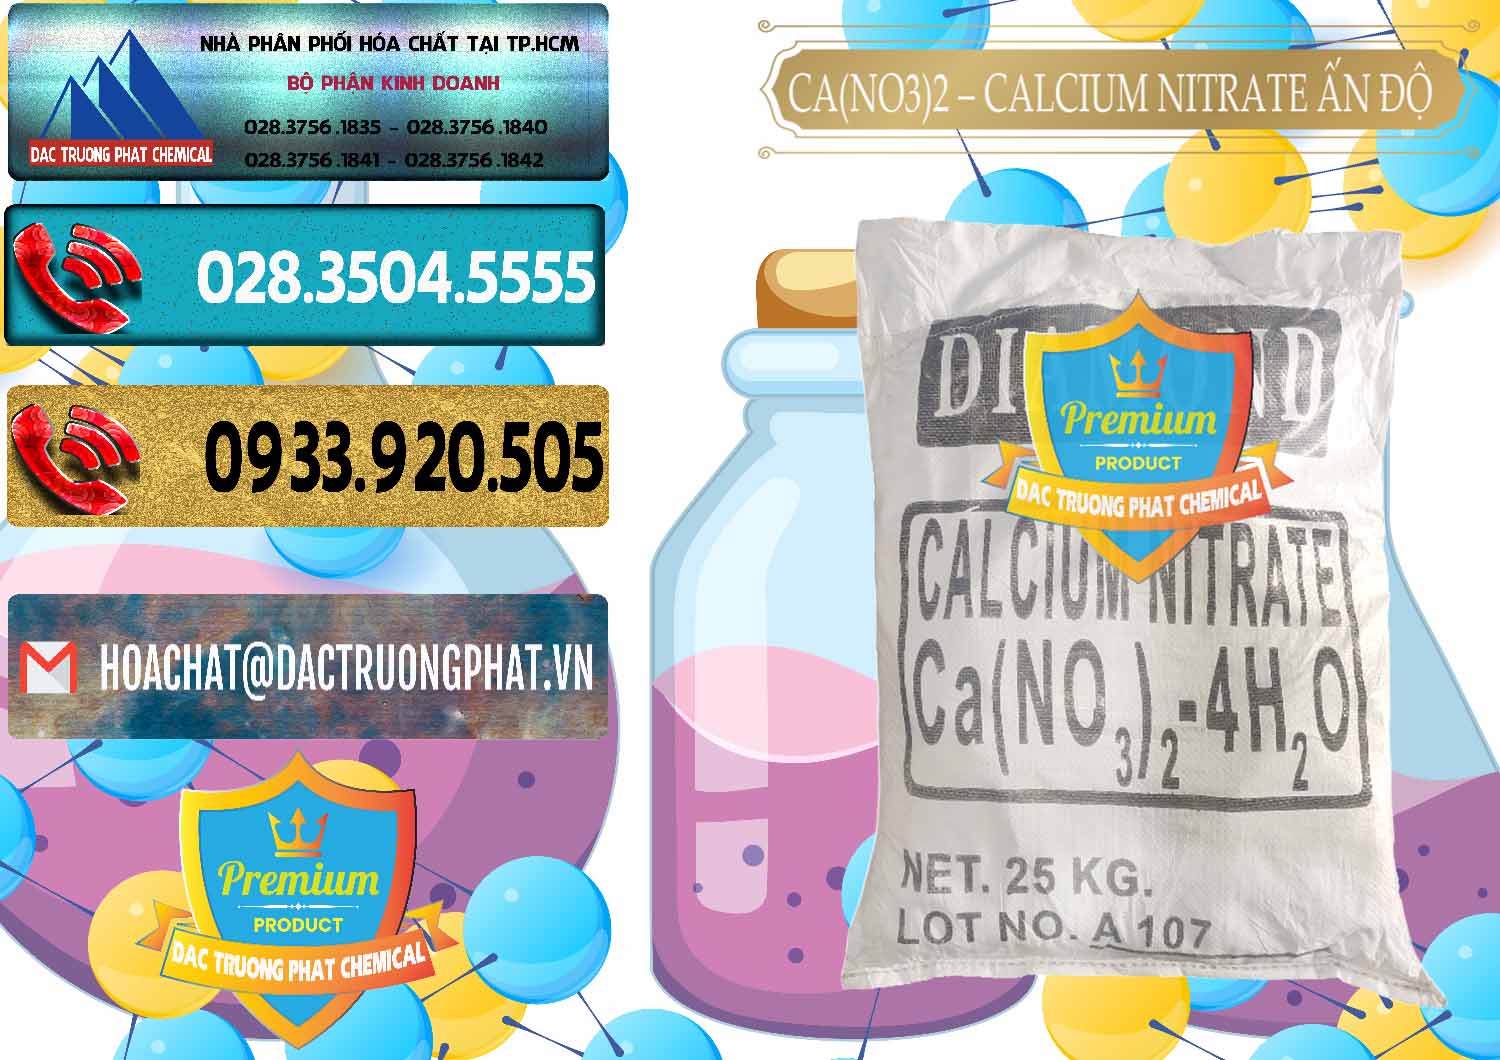 Cty bán _ cung ứng CA(NO3)2 – Calcium Nitrate Ấn Độ India - 0038 - Đơn vị bán _ phân phối hóa chất tại TP.HCM - hoachatdetnhuom.com